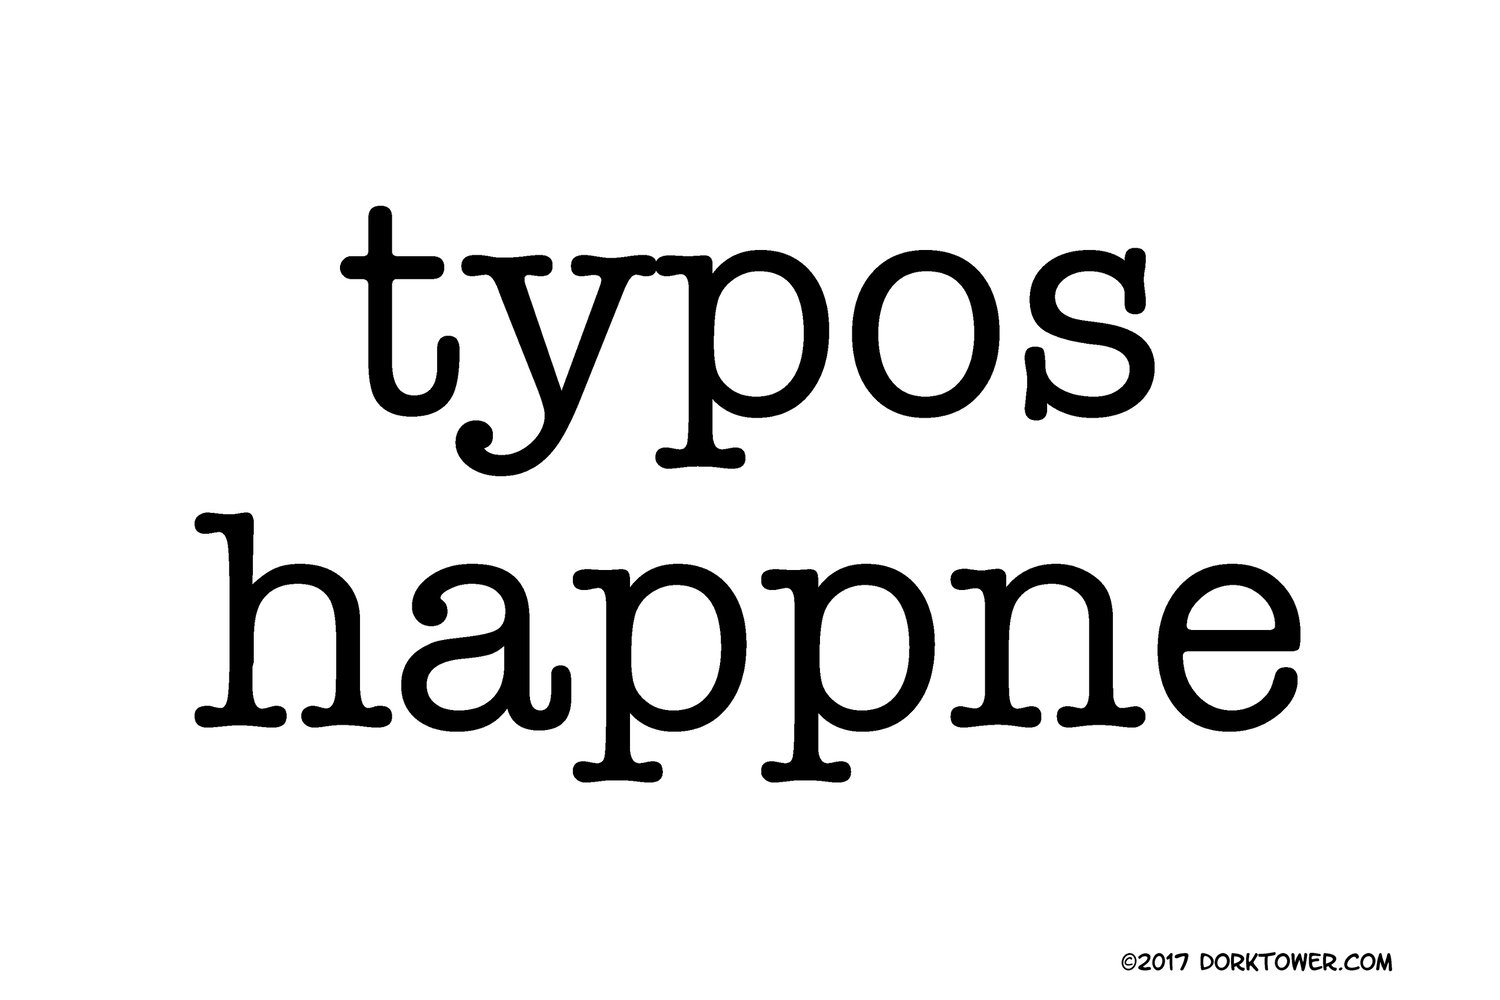 Image of Typos Happne print